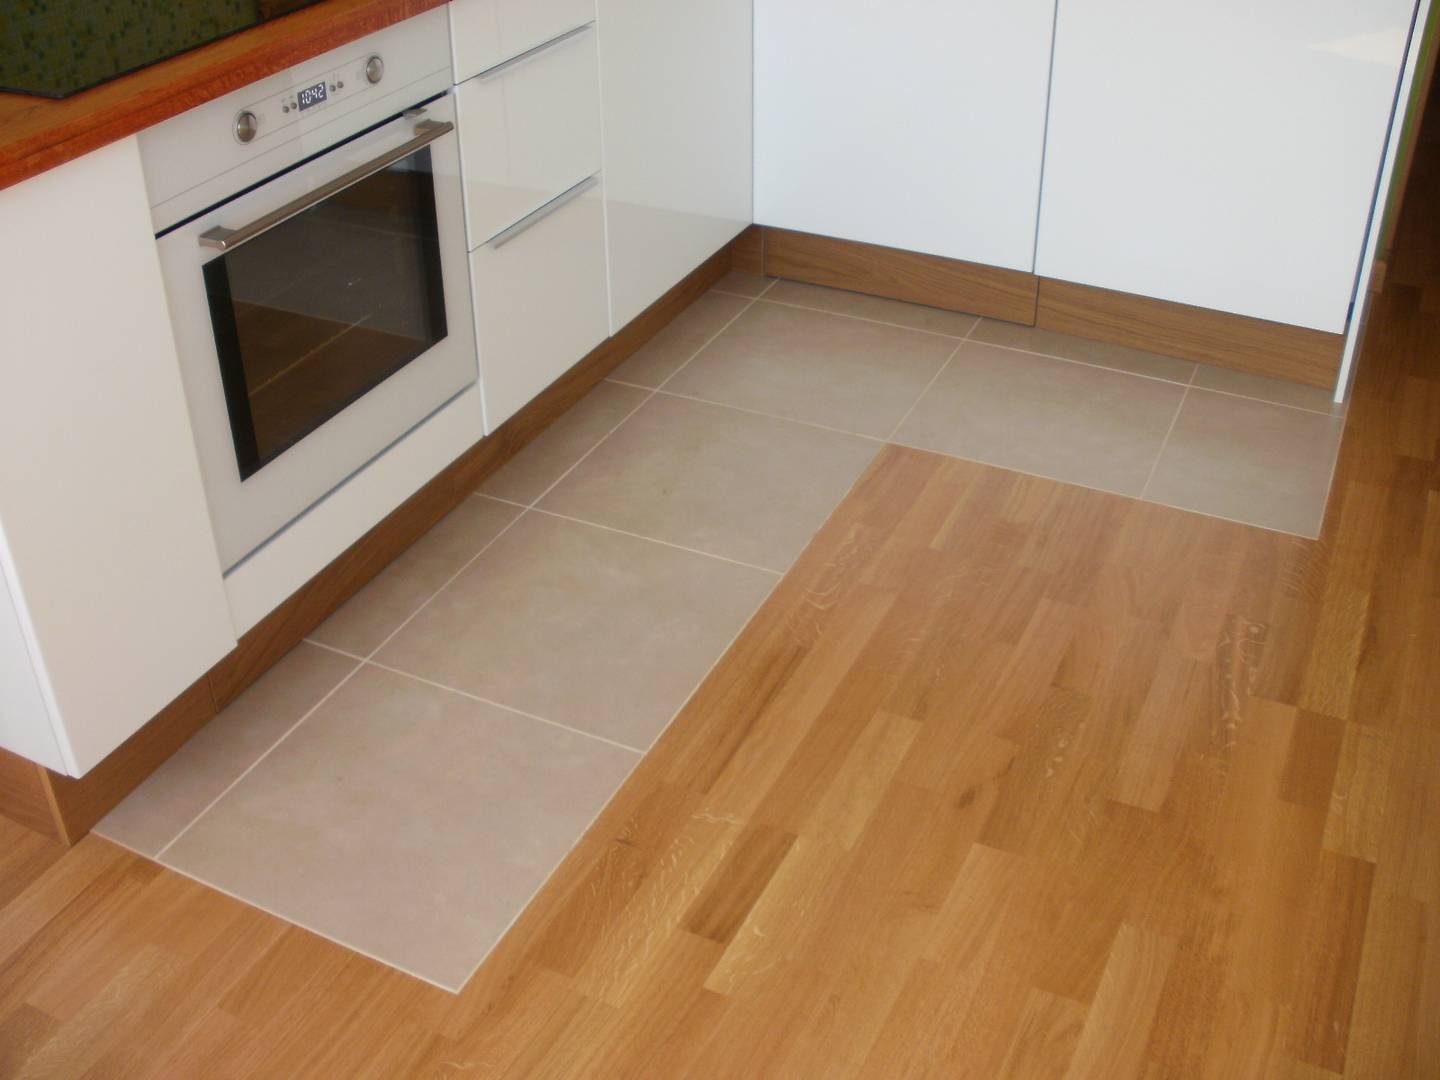 Комбинированный пол на кухне: совмещаем плитку и ламинат